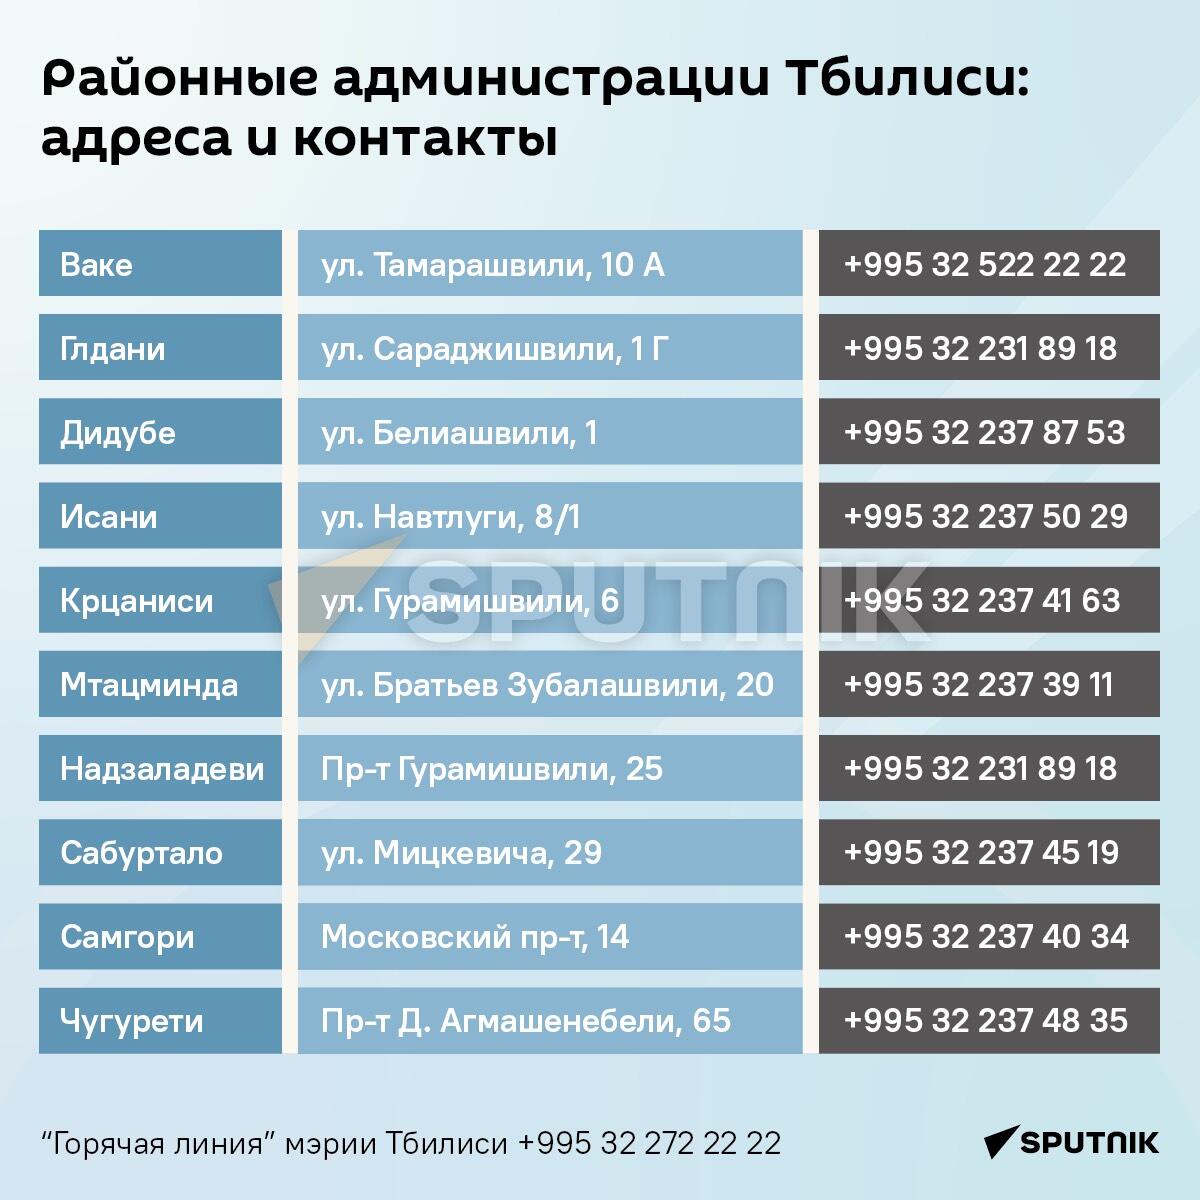 Районные администрации Тбилиси: адреса и контакты - Sputnik Грузия